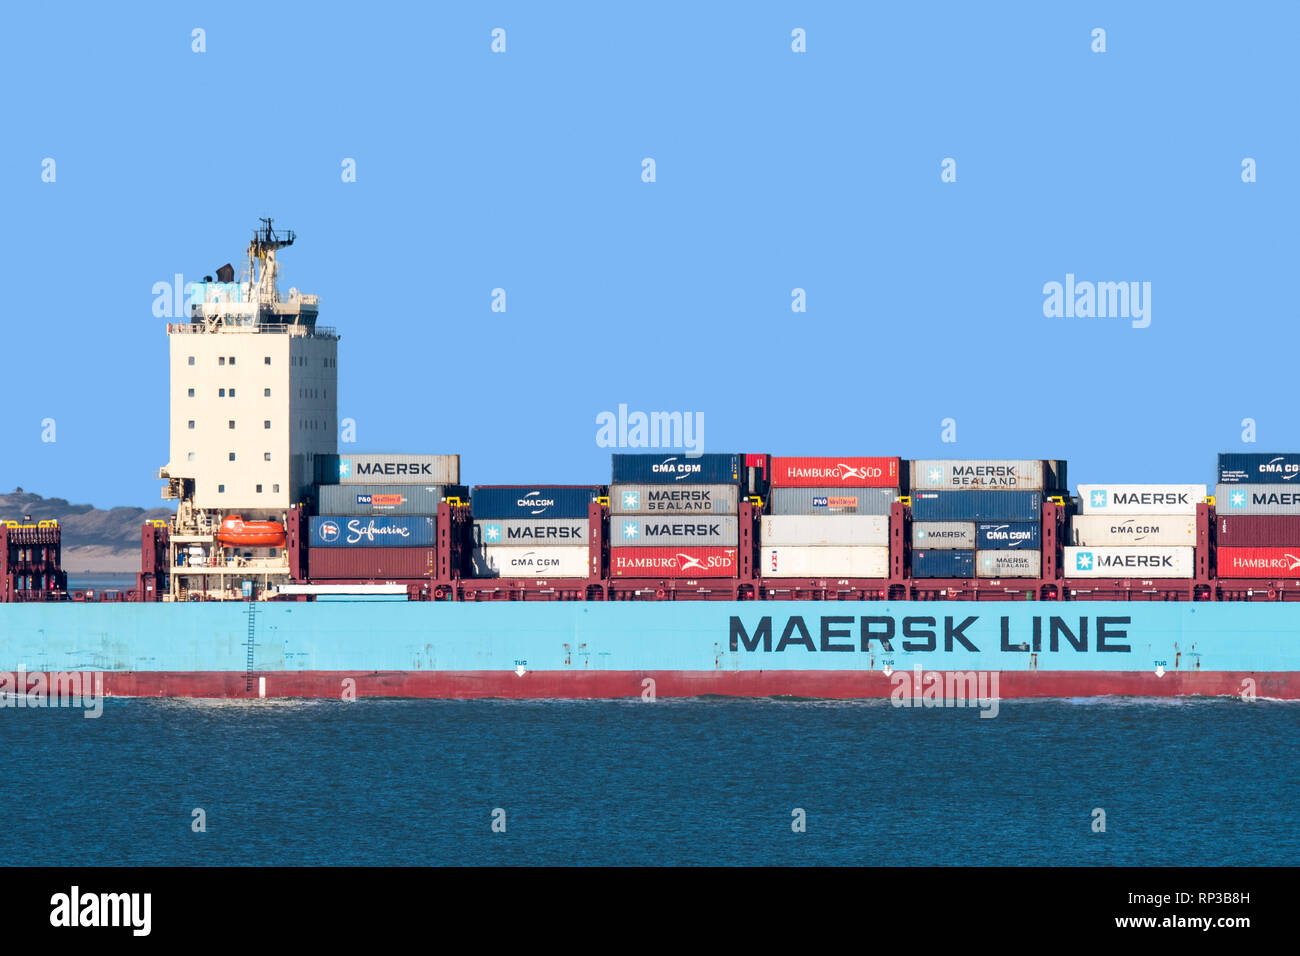 Vuoksi Maersk, ice-chargeur de classe / conteneurs de cargo danois Maersk Line, compagnie de transport maritime international de conteneurs Banque D'Images